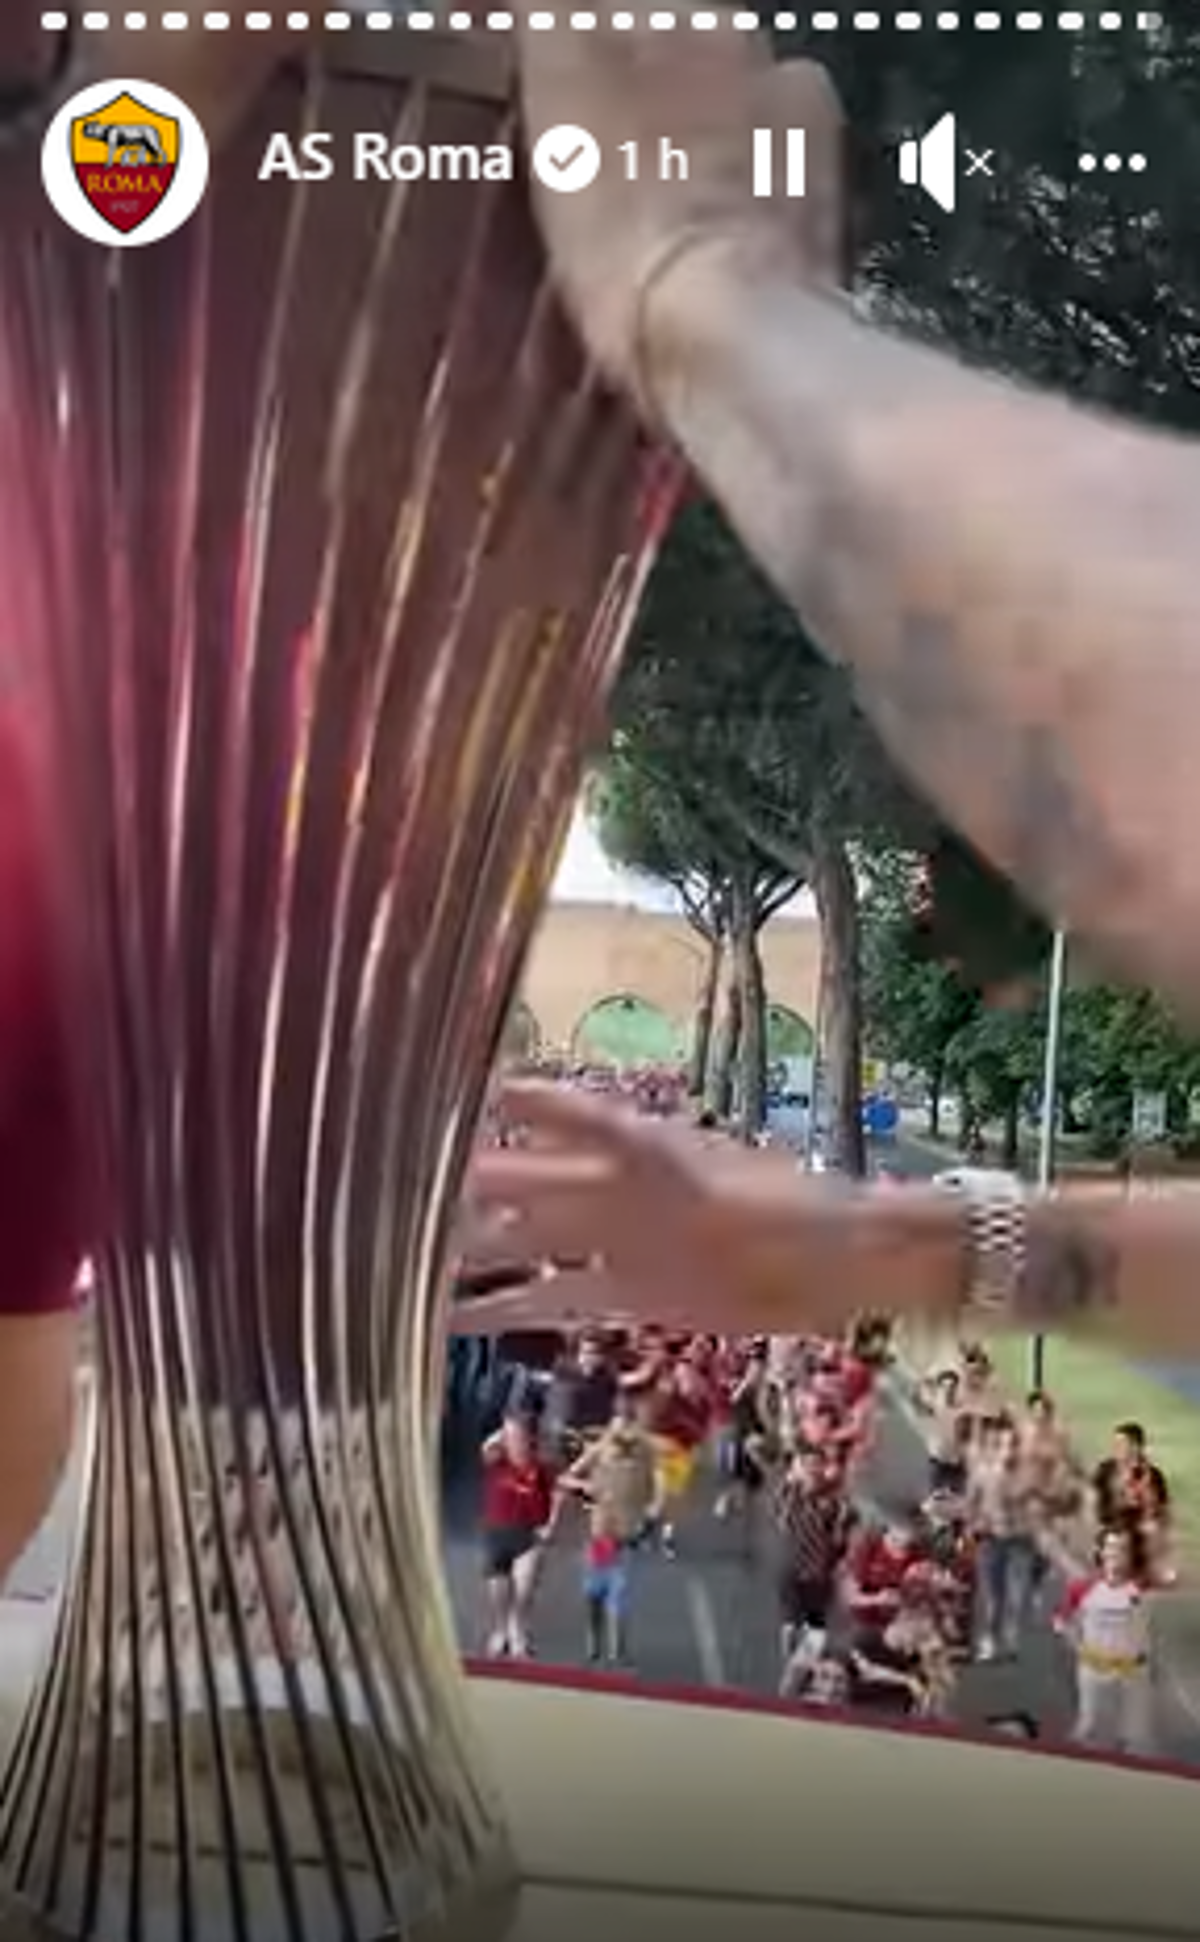 Festa Roma, caos in centro, chiusa Metro Colosseo: fiume di persone in strada (FOTO E VIDEO)